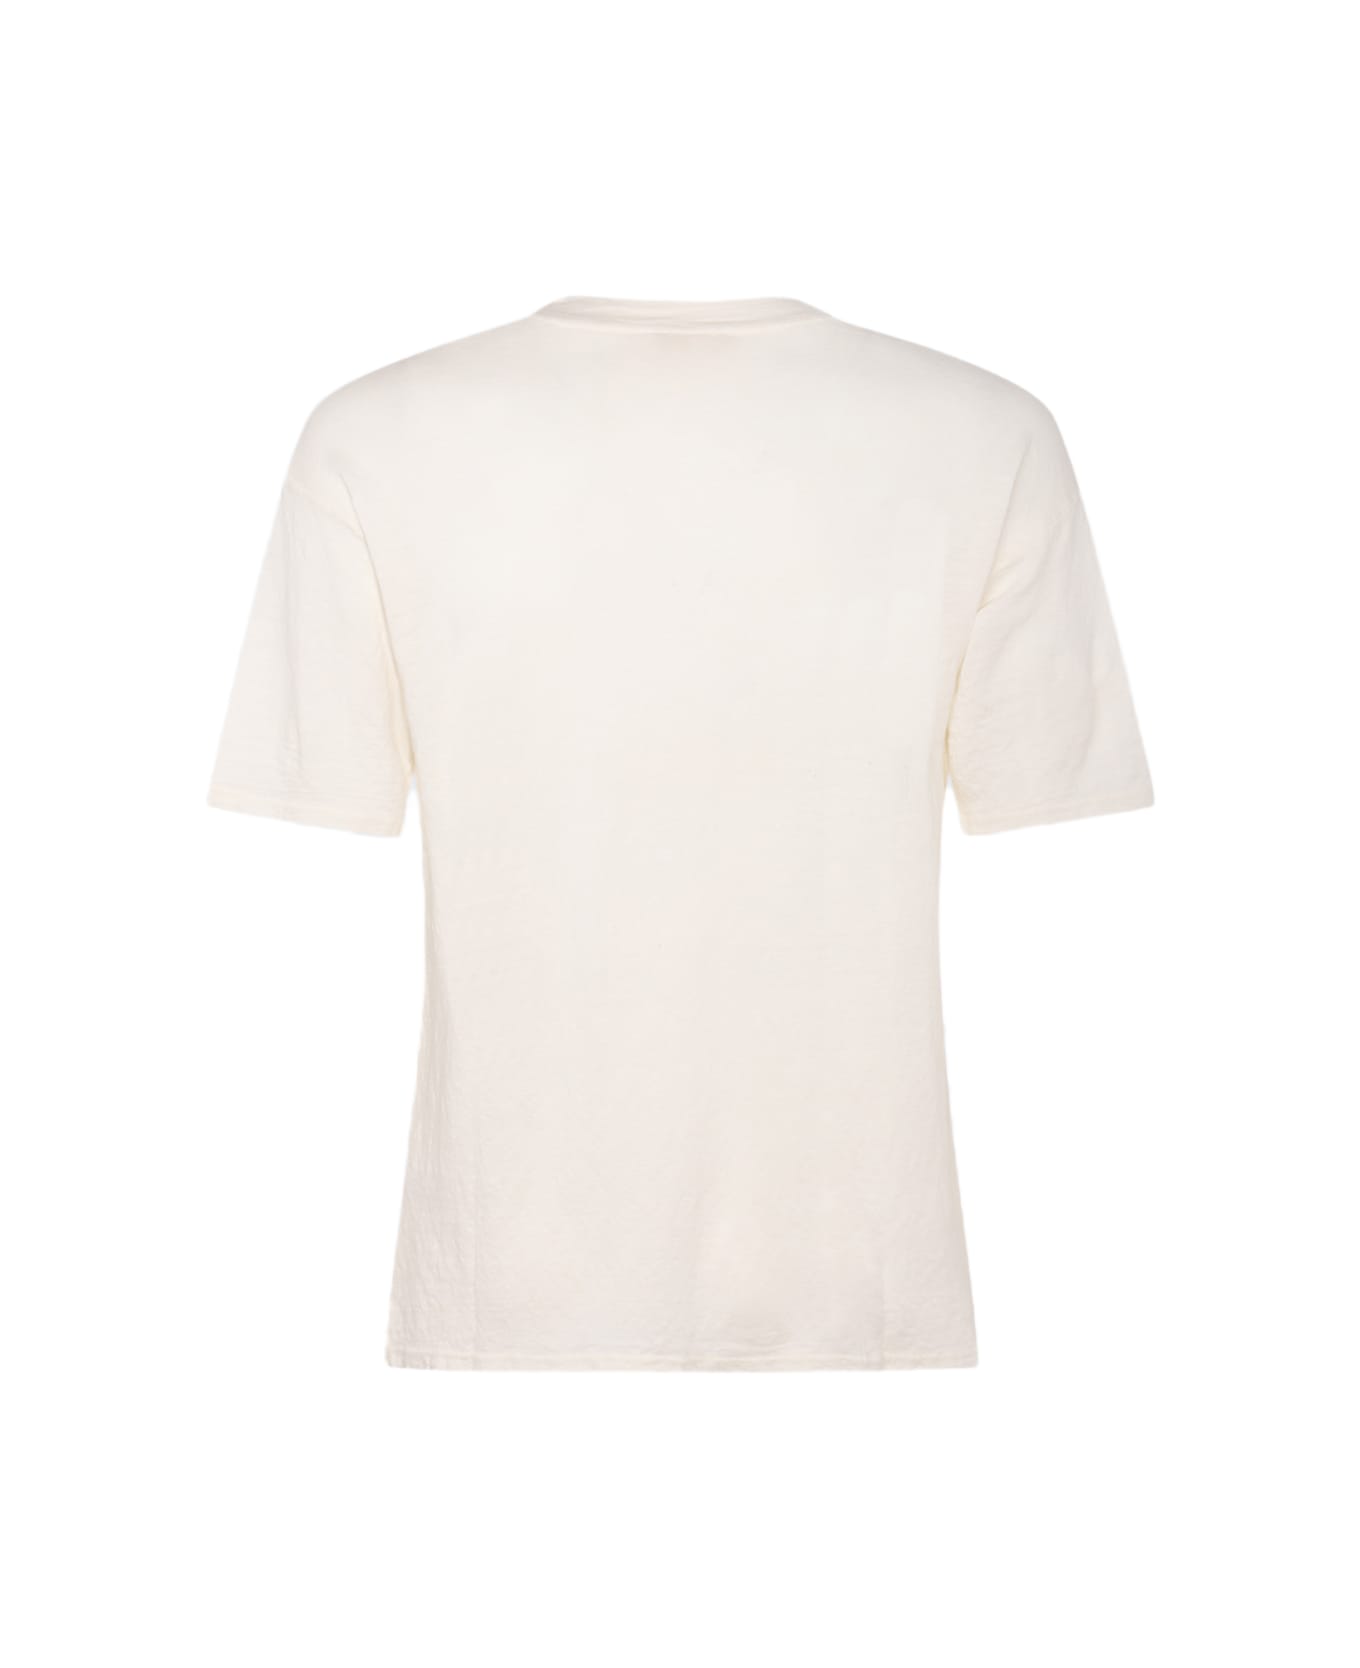 Ma'ry'ya White Linen T-shirt - White シャツ